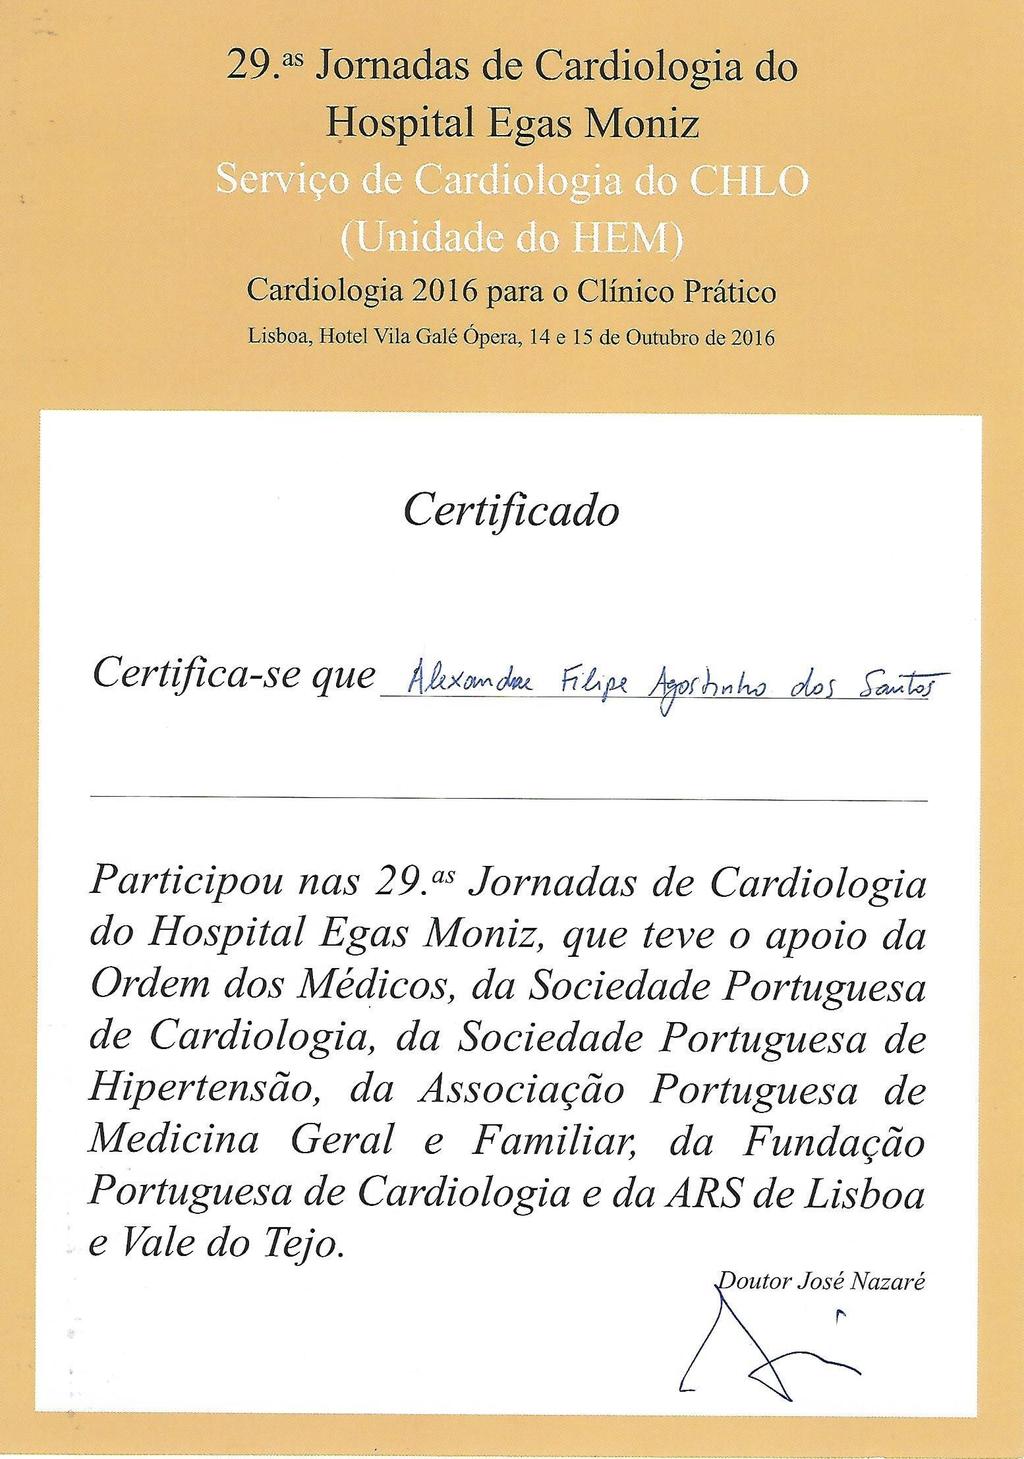 Anexo IV Certificado de participação nas 29ª Jornadas de